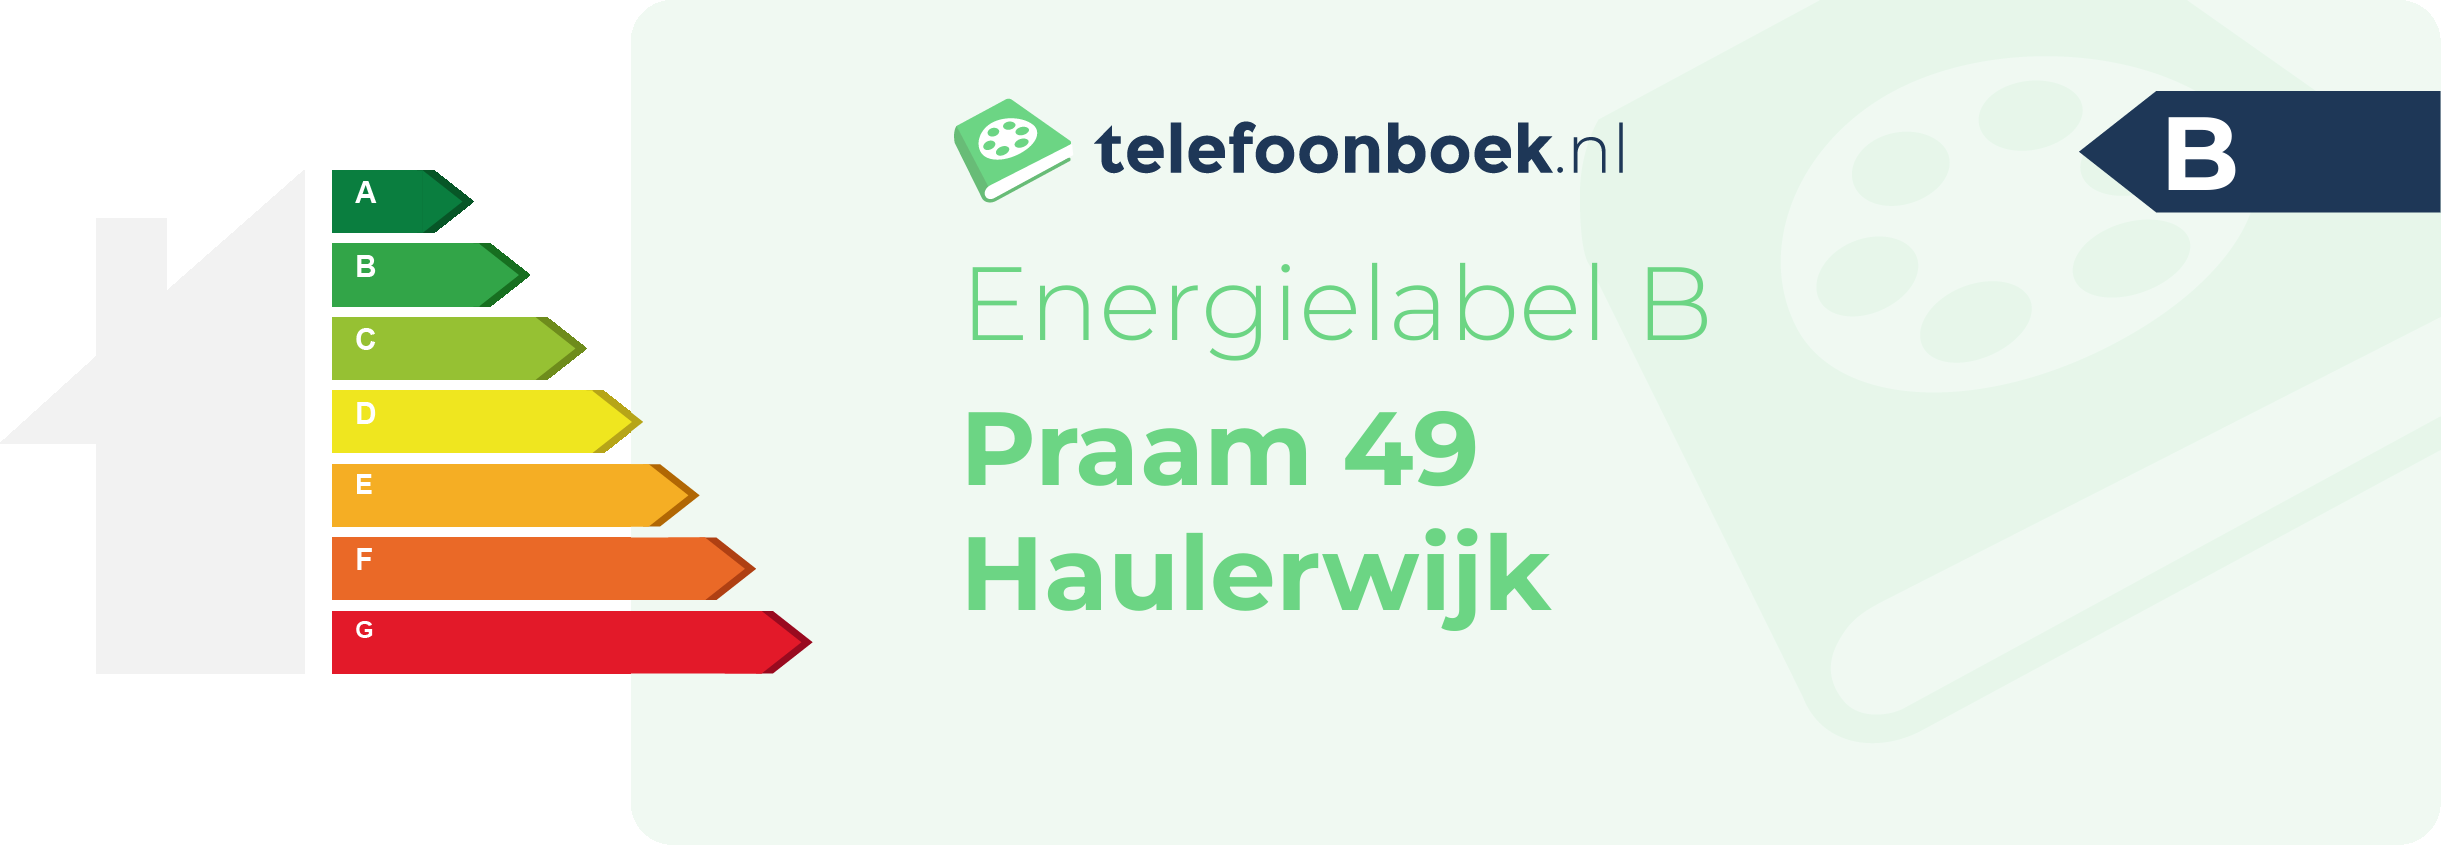 Energielabel Praam 49 Haulerwijk